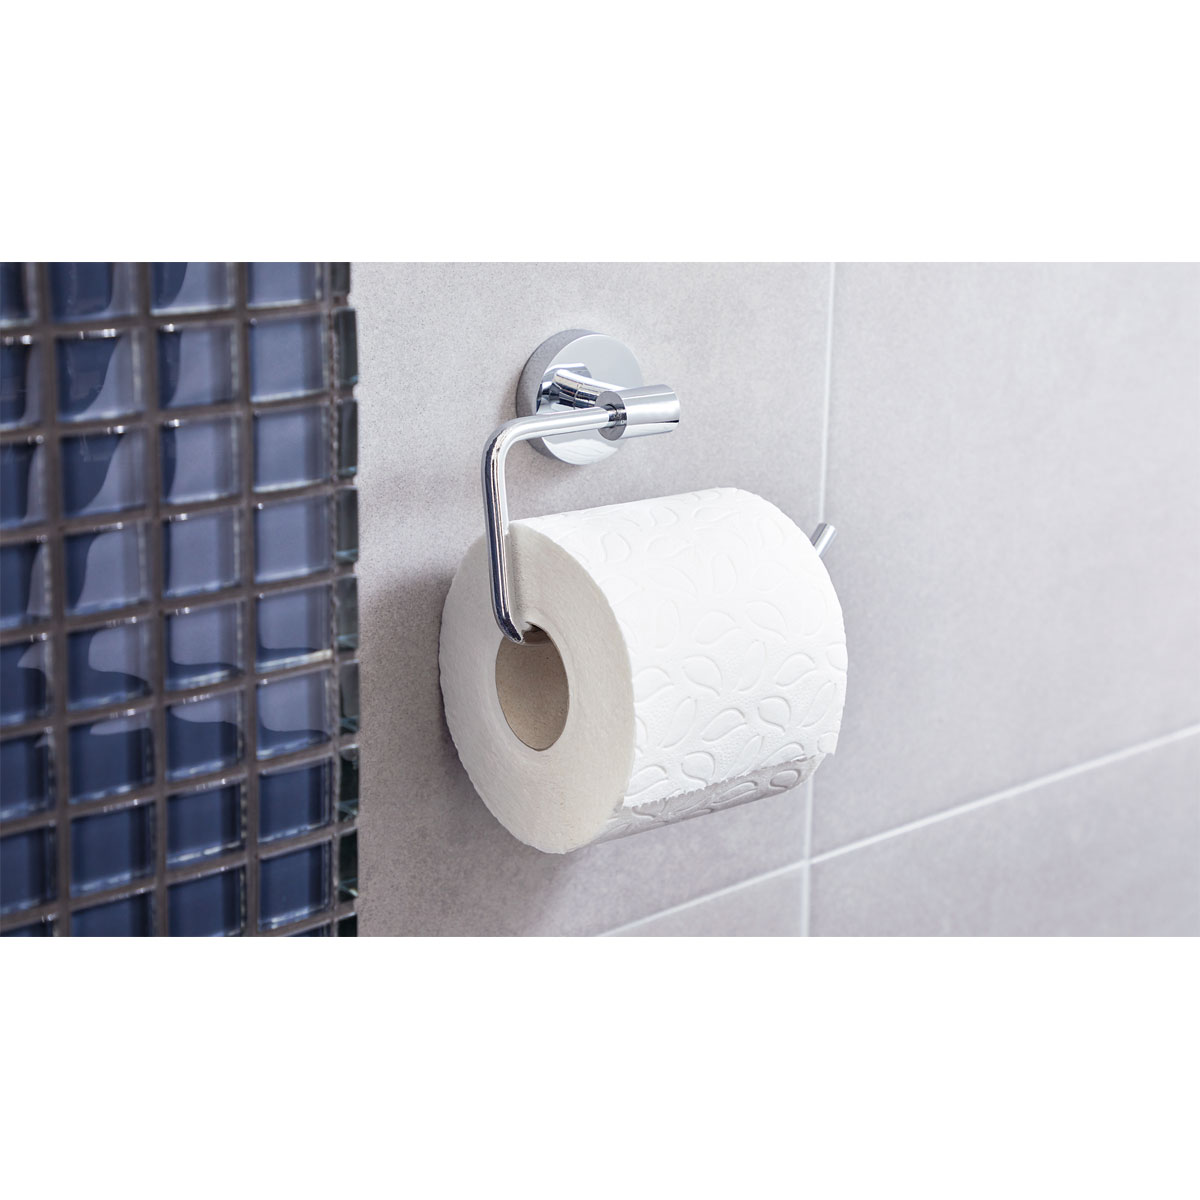 Toilettenrollenhalter mit Ablage „Deluxxe“